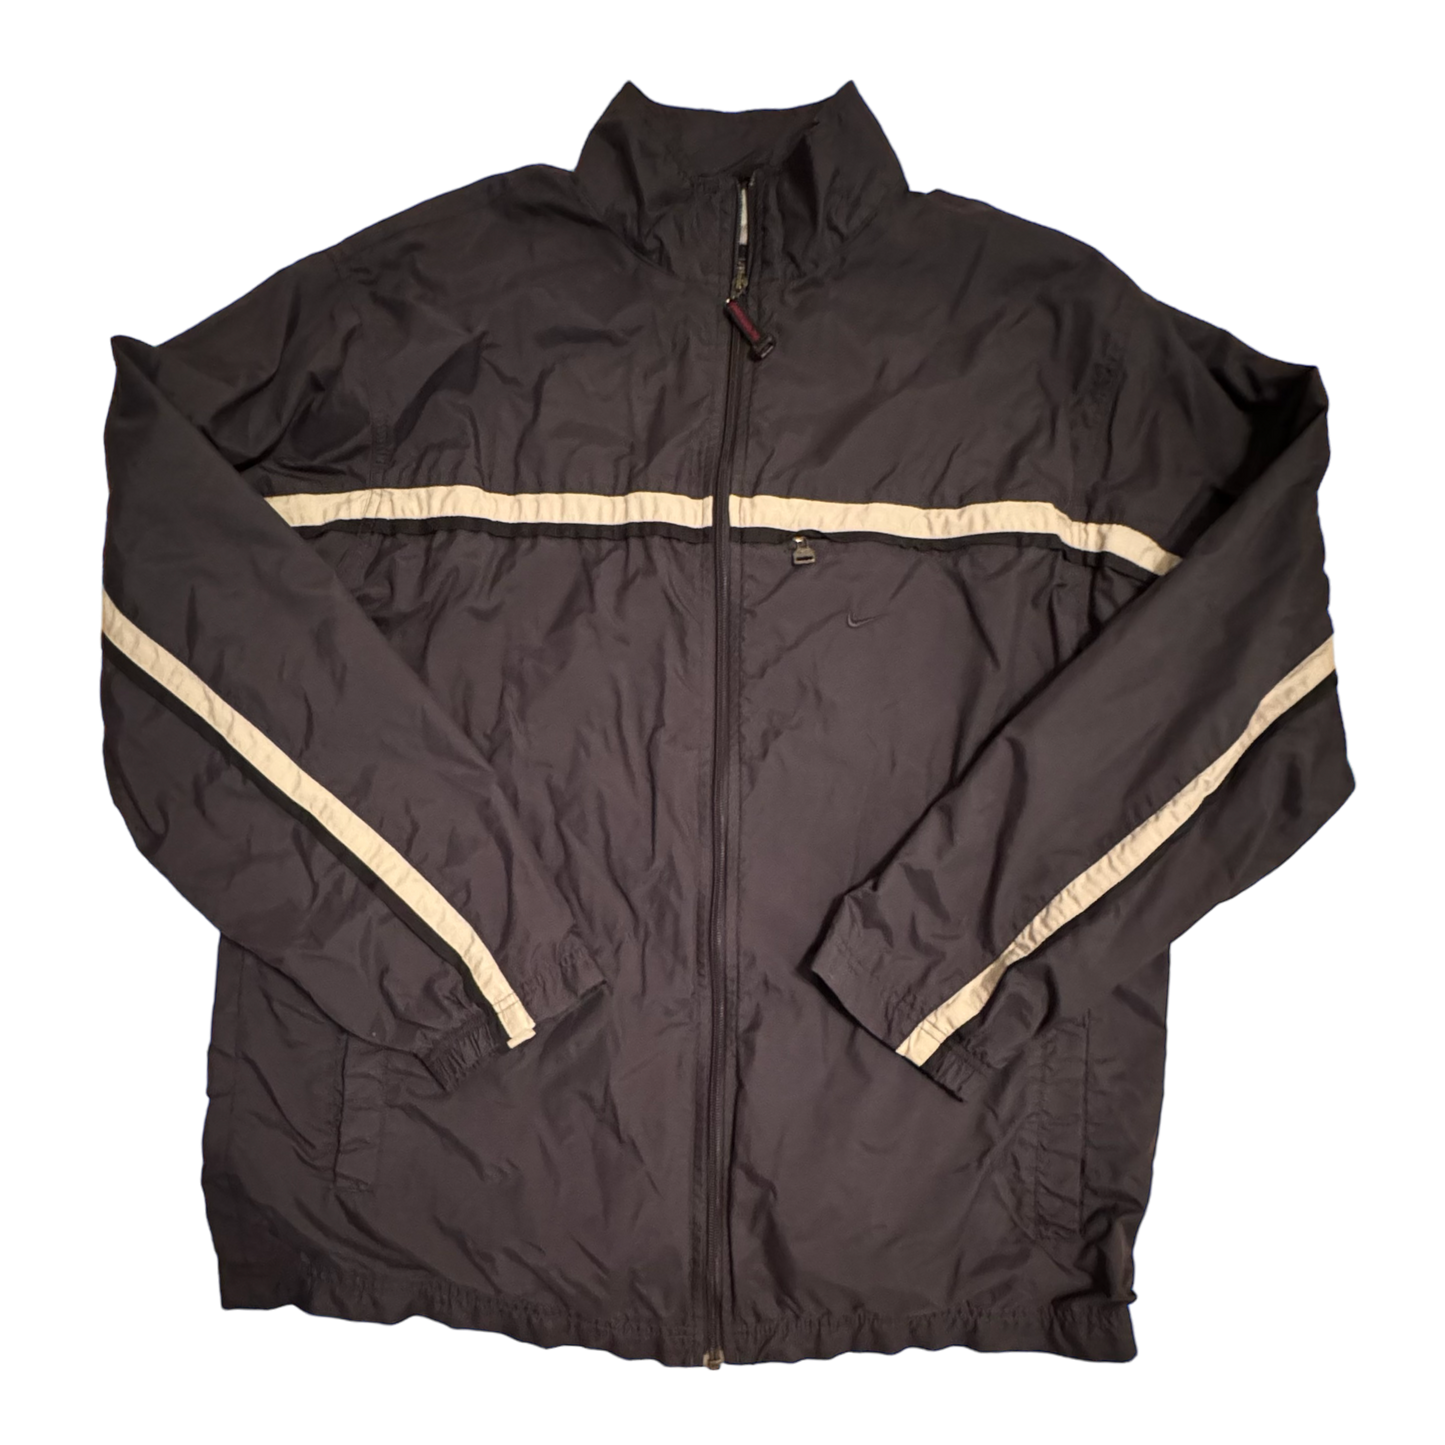 Nike - Grey/Black Vintage 90s Full Zip Windbreaker Jacket